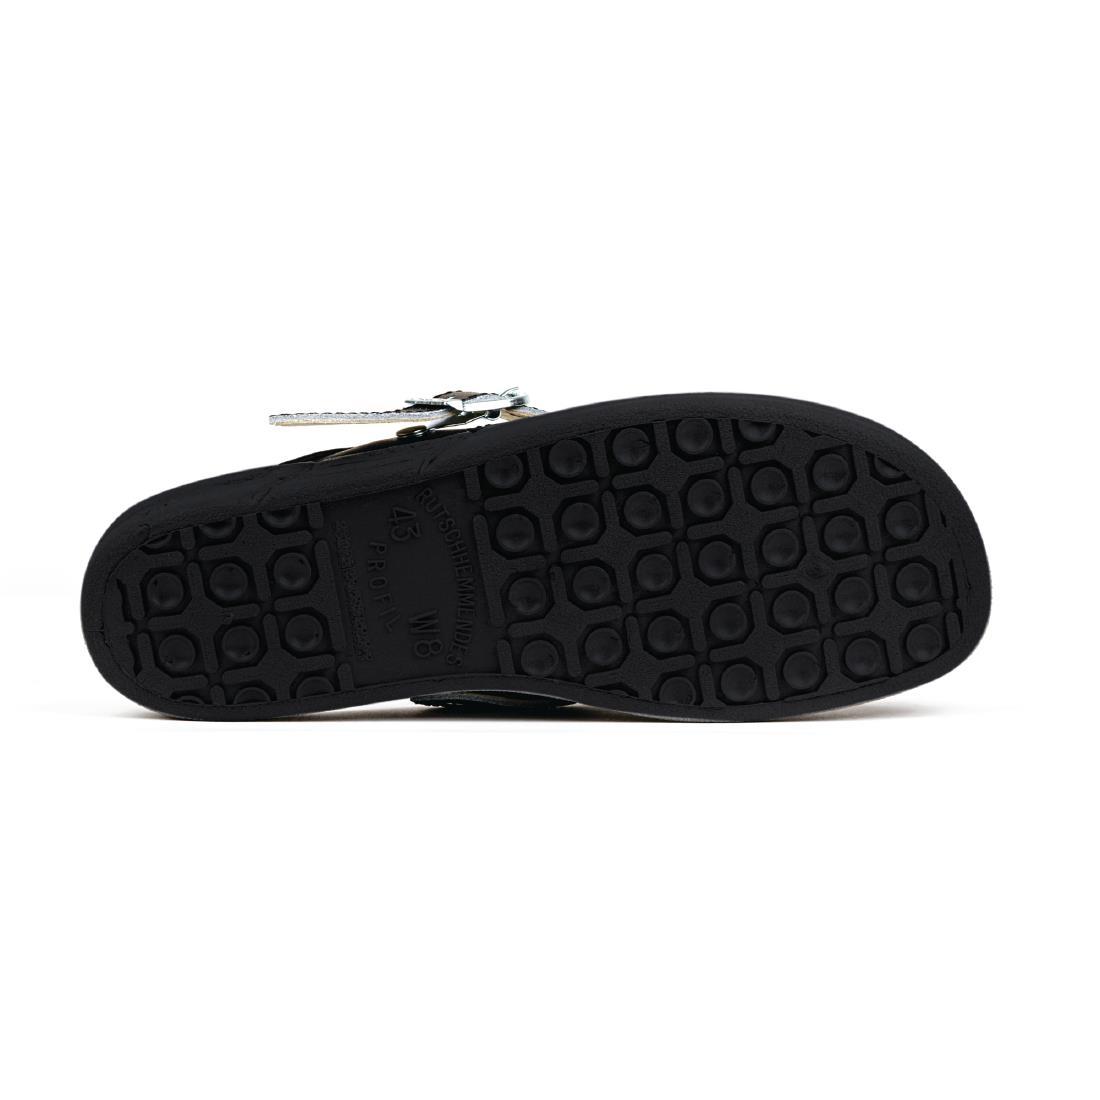 Abeba Microfibre Clogs Black Size 41 - A898-41  - 4